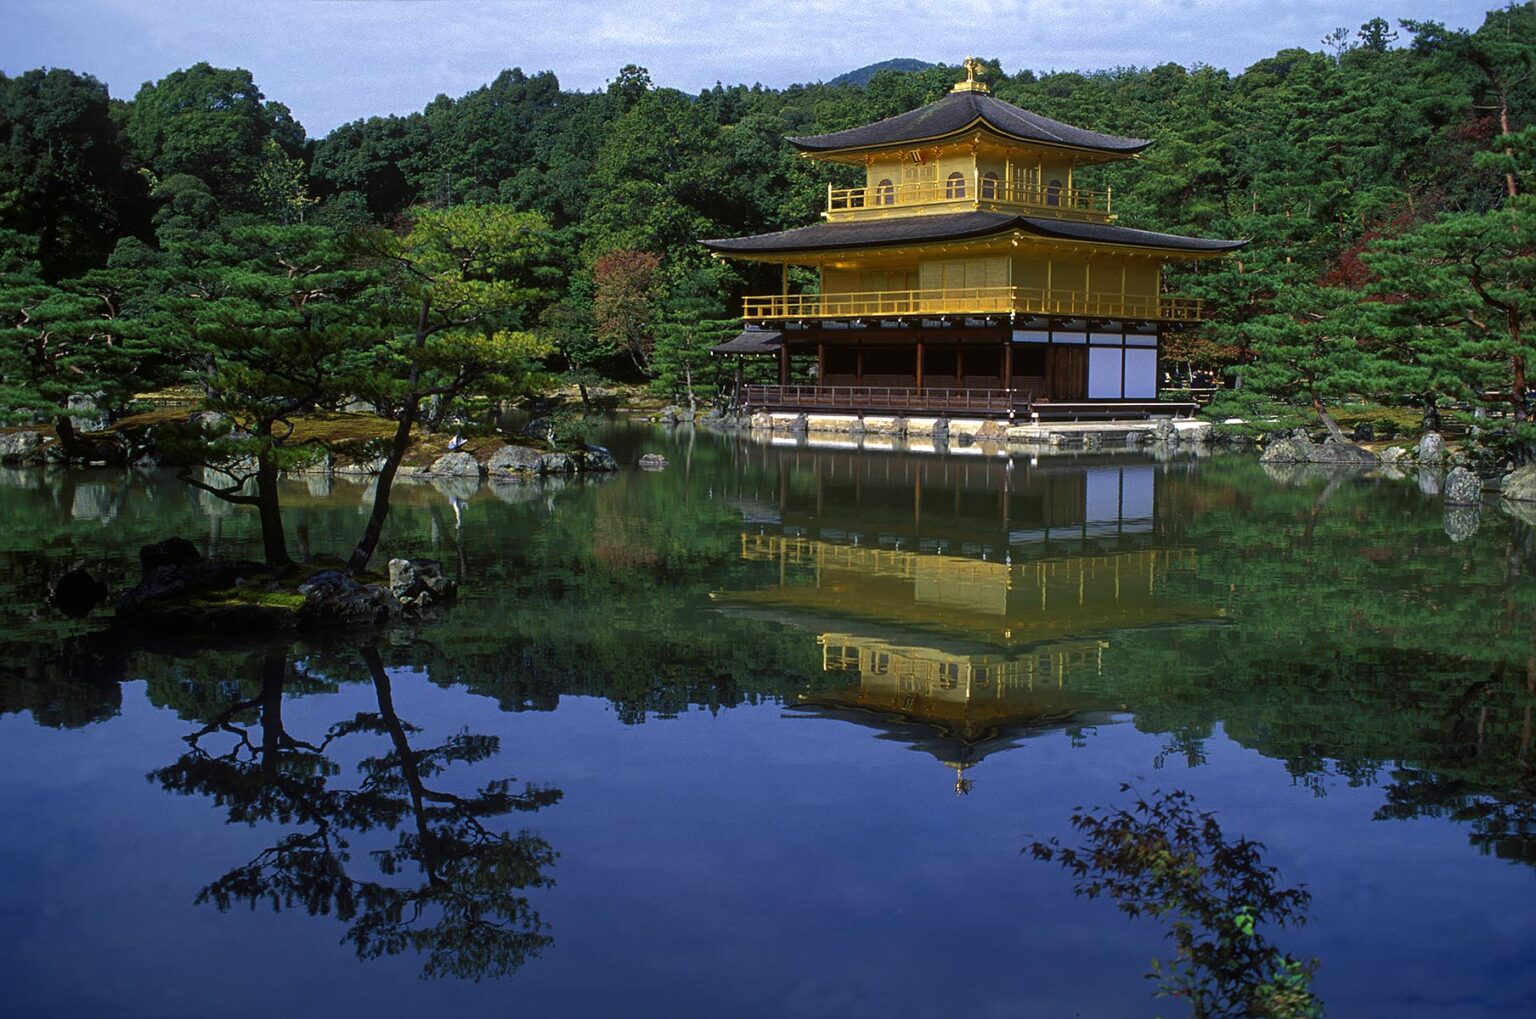 Kinkaku, THE GOLDEN PAVILLION, was built by the 3rd Ashikaga Shogun (1358-1408) - KYOTO, JAPAN